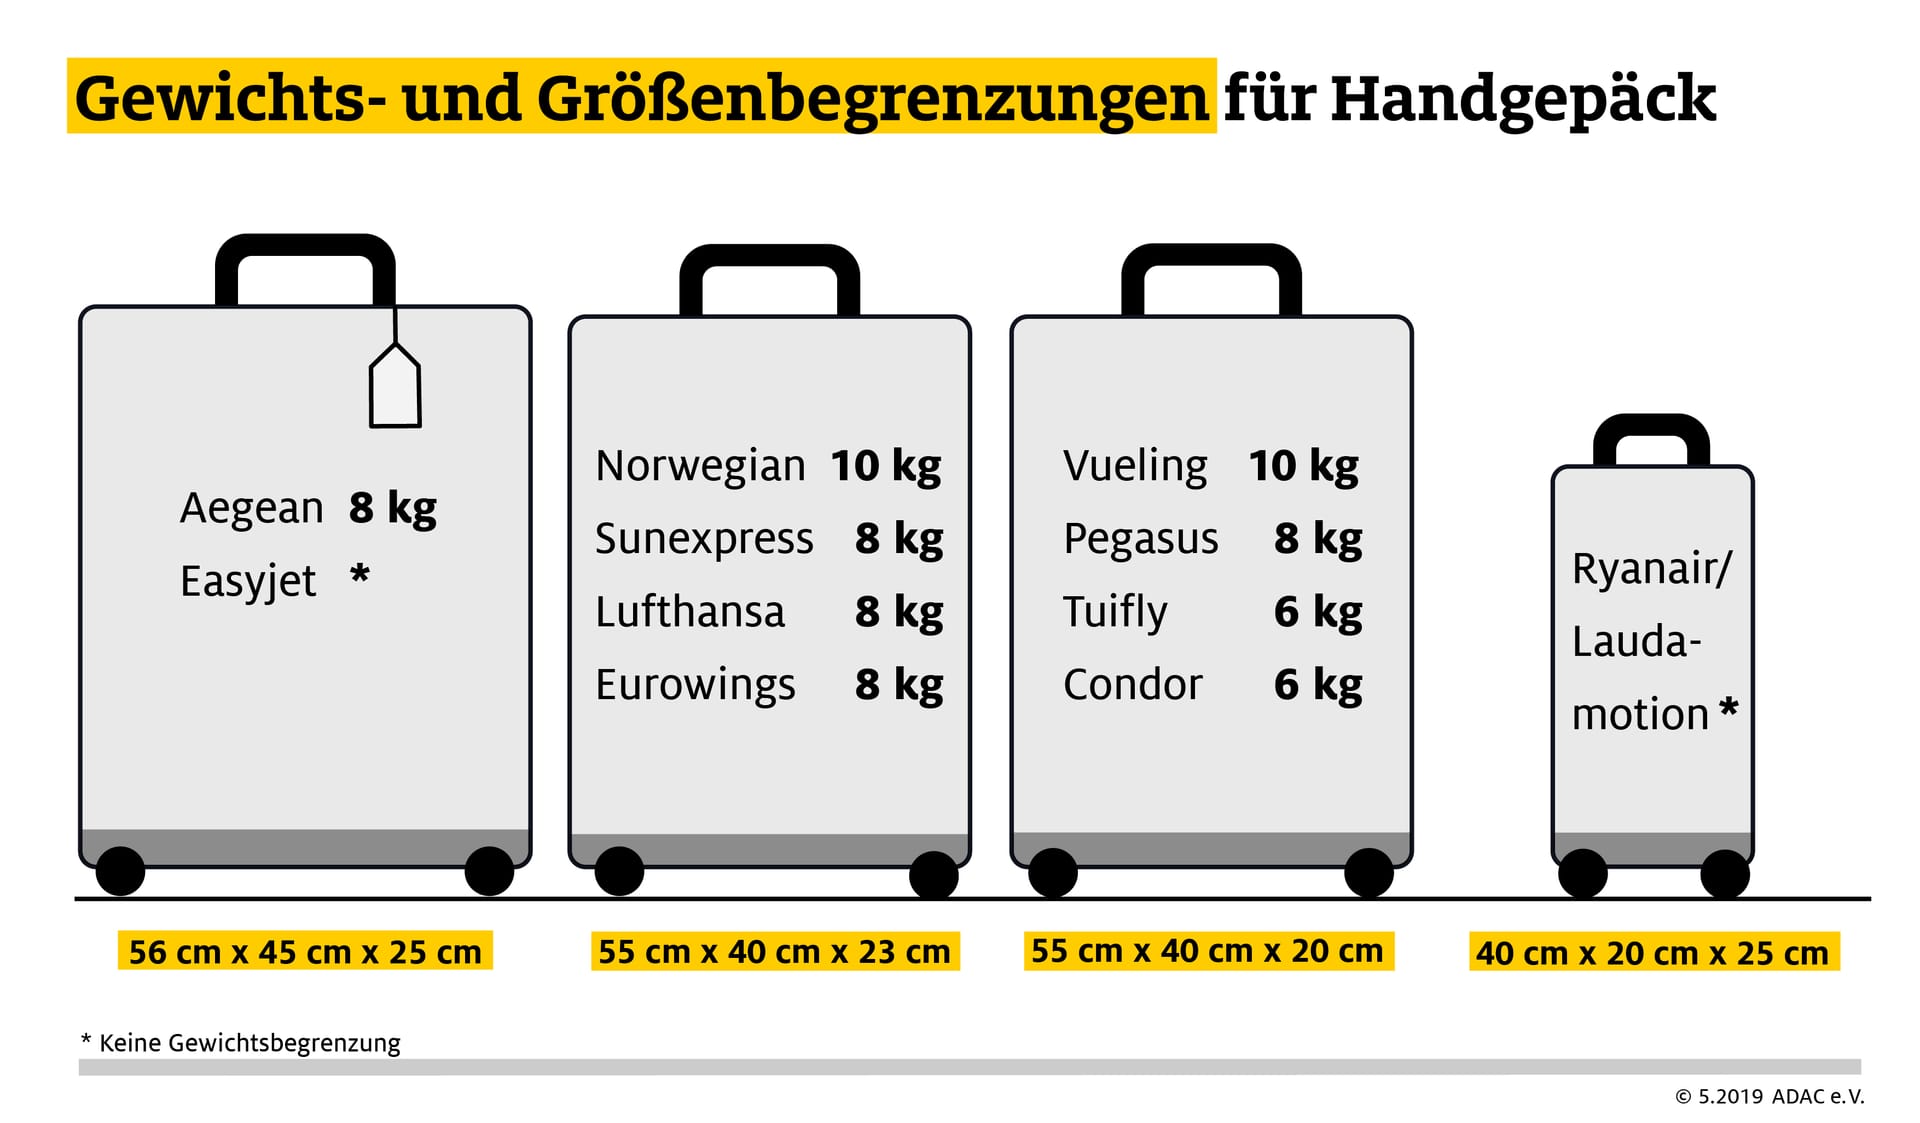 Handgepäck: Ryanair und Laudamotion haben besonders strenge Größenvorgaben.